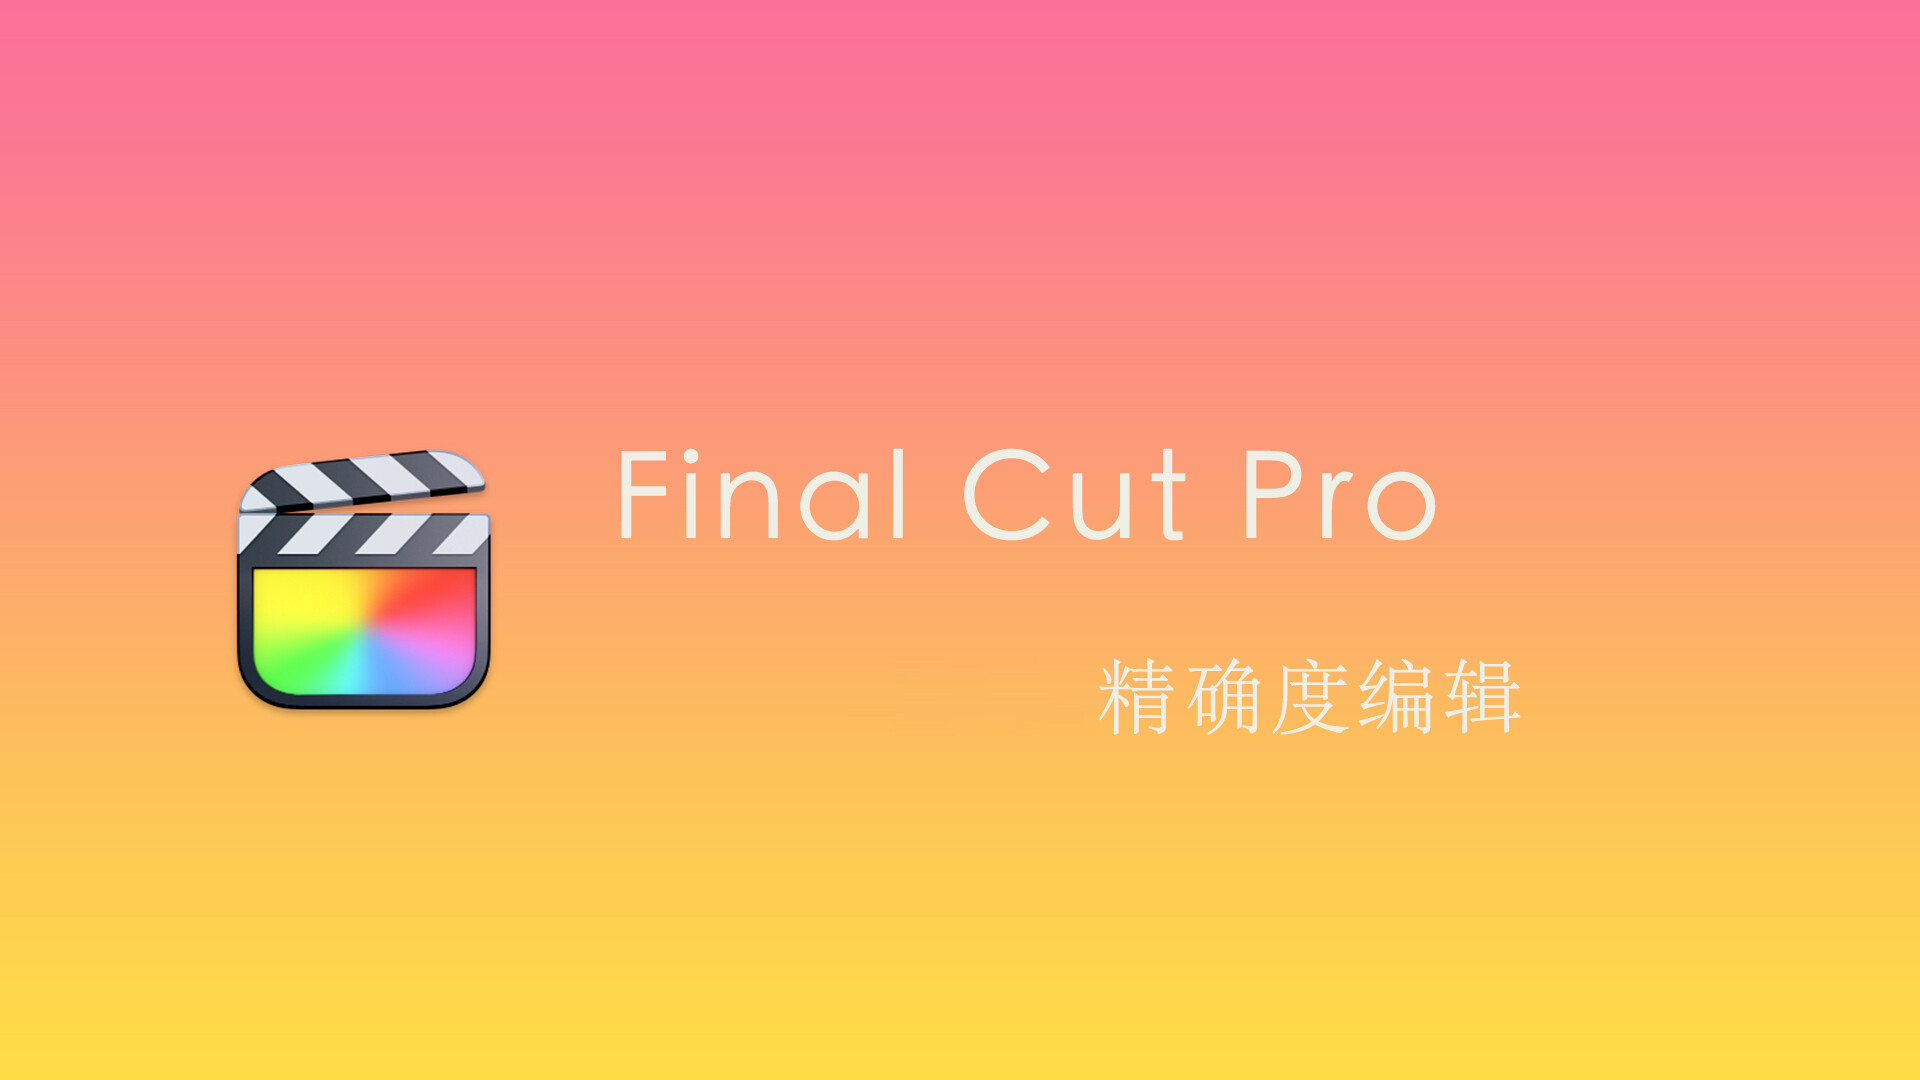 Final Cut Pro 中文基础教程(48)精确度编辑